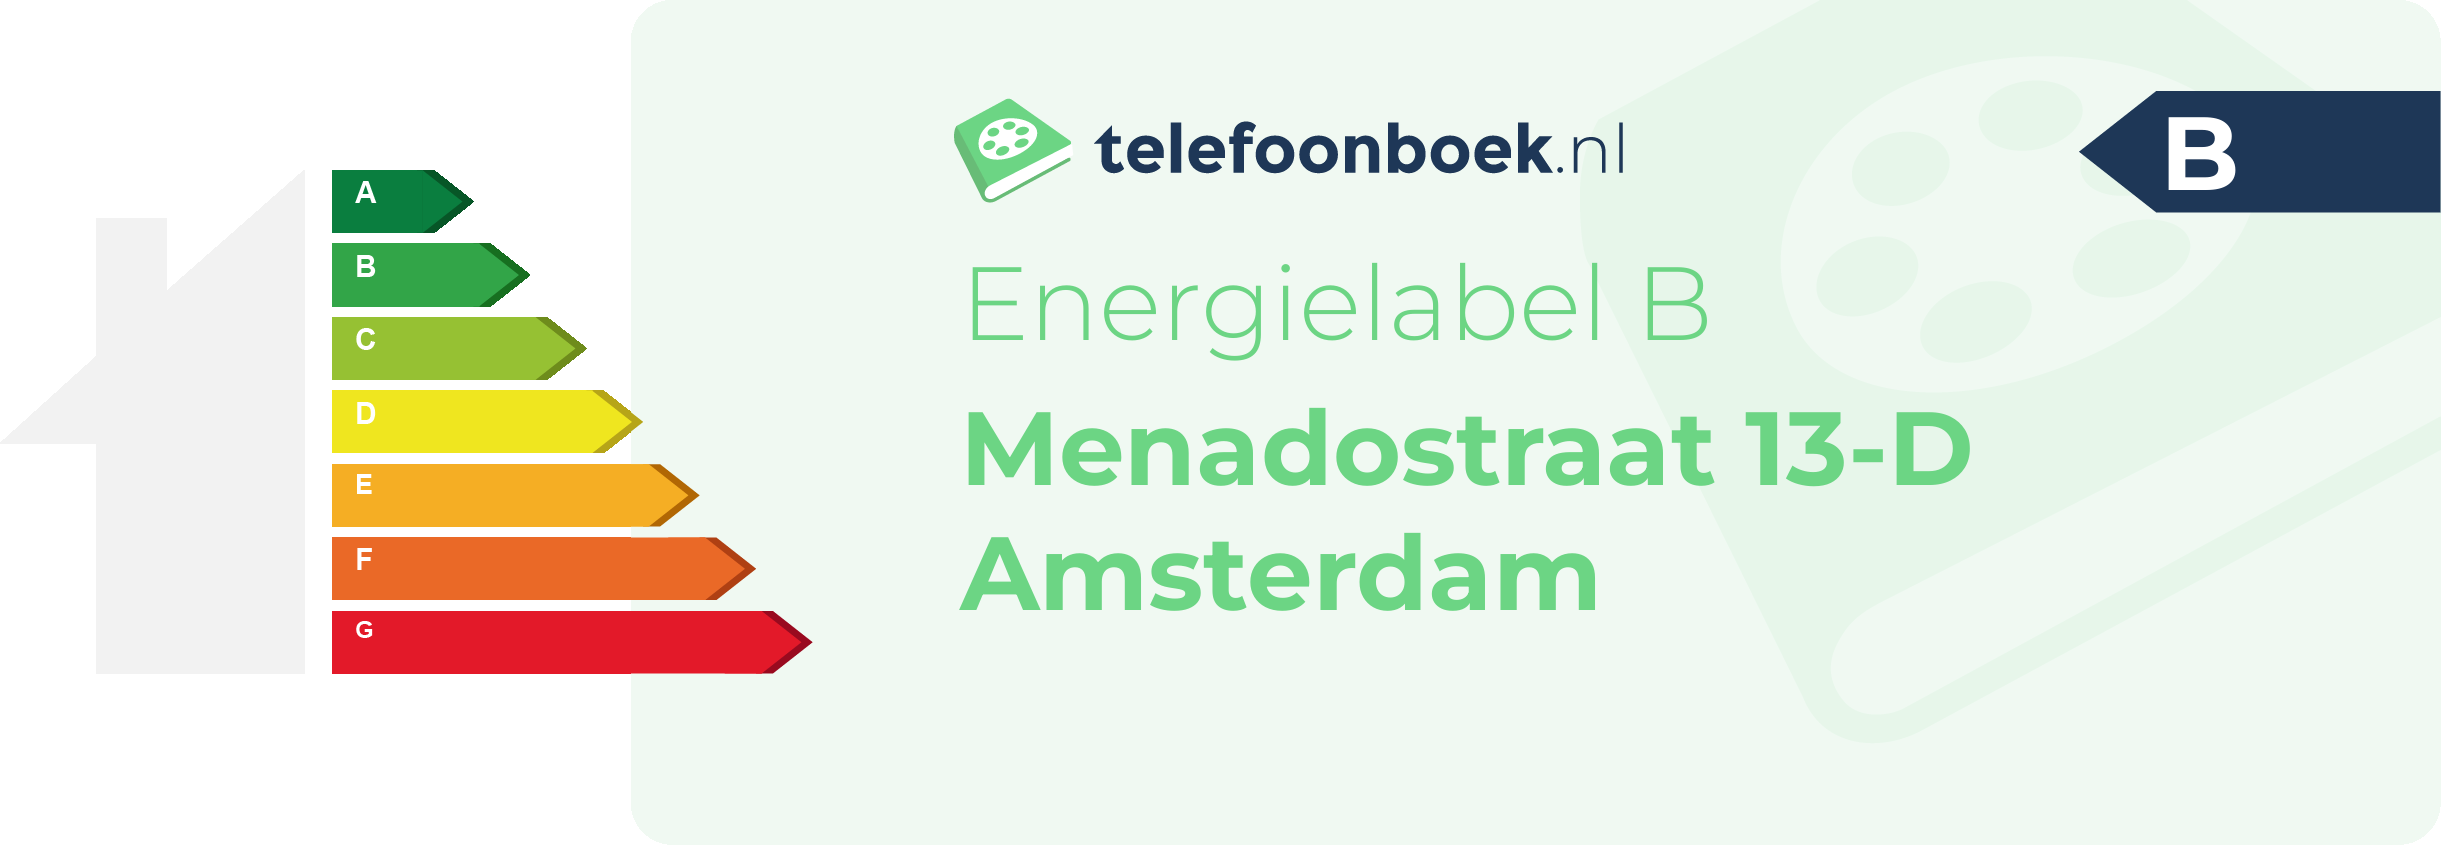 Energielabel Menadostraat 13-D Amsterdam